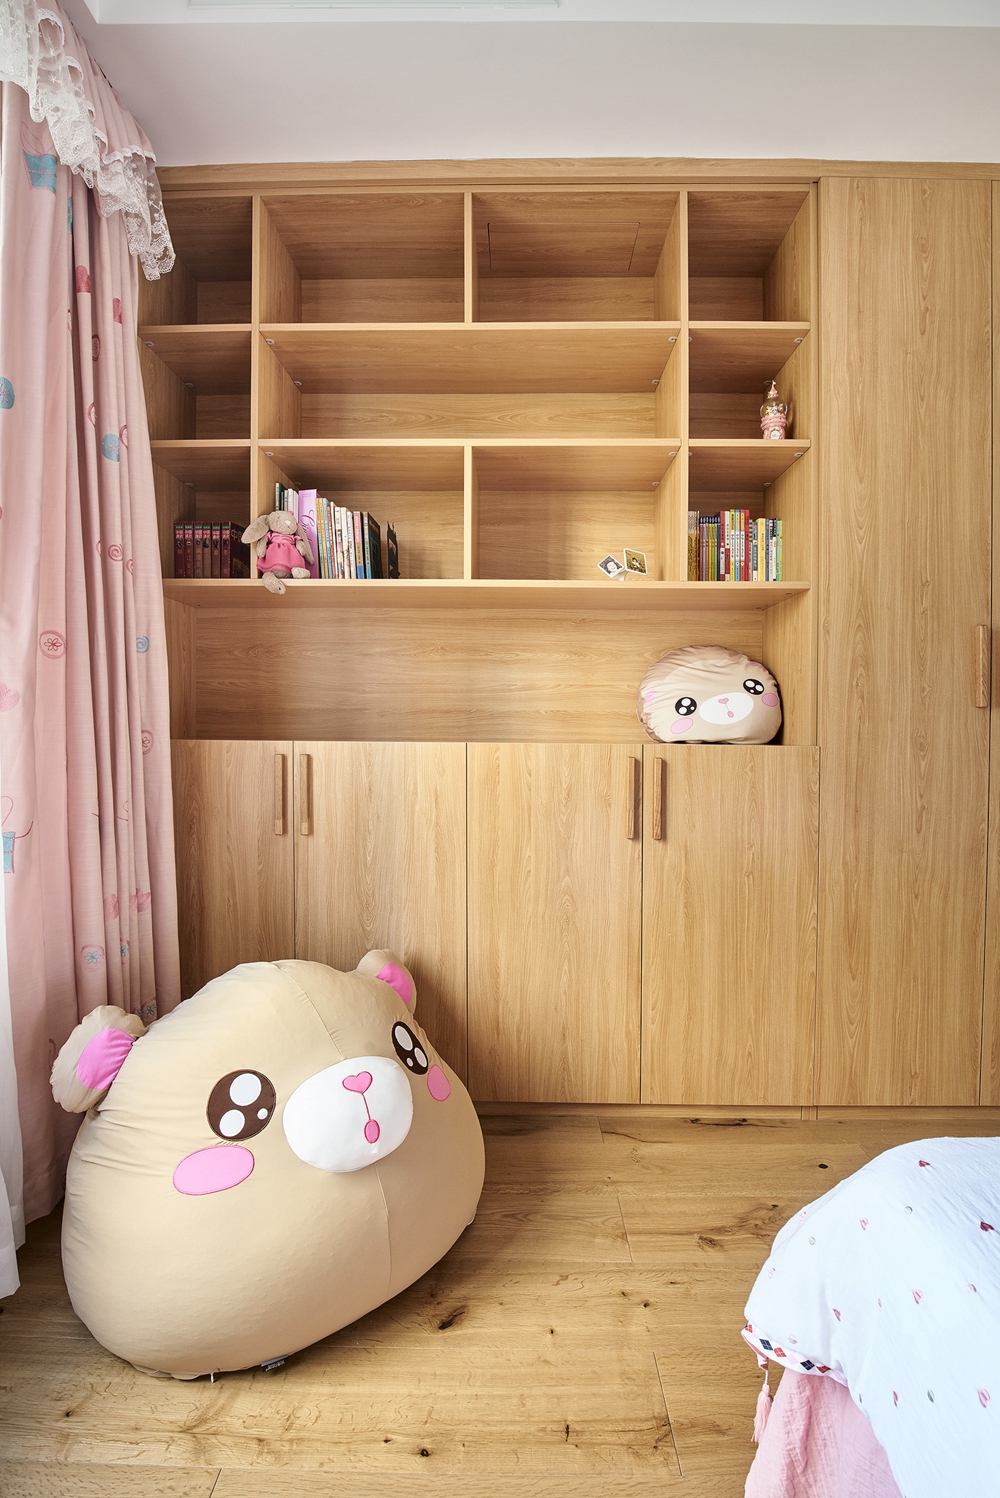 原木色系的家具、极简的白墙、粉色窗帘和床品，日式的清新感跃然于眼前。